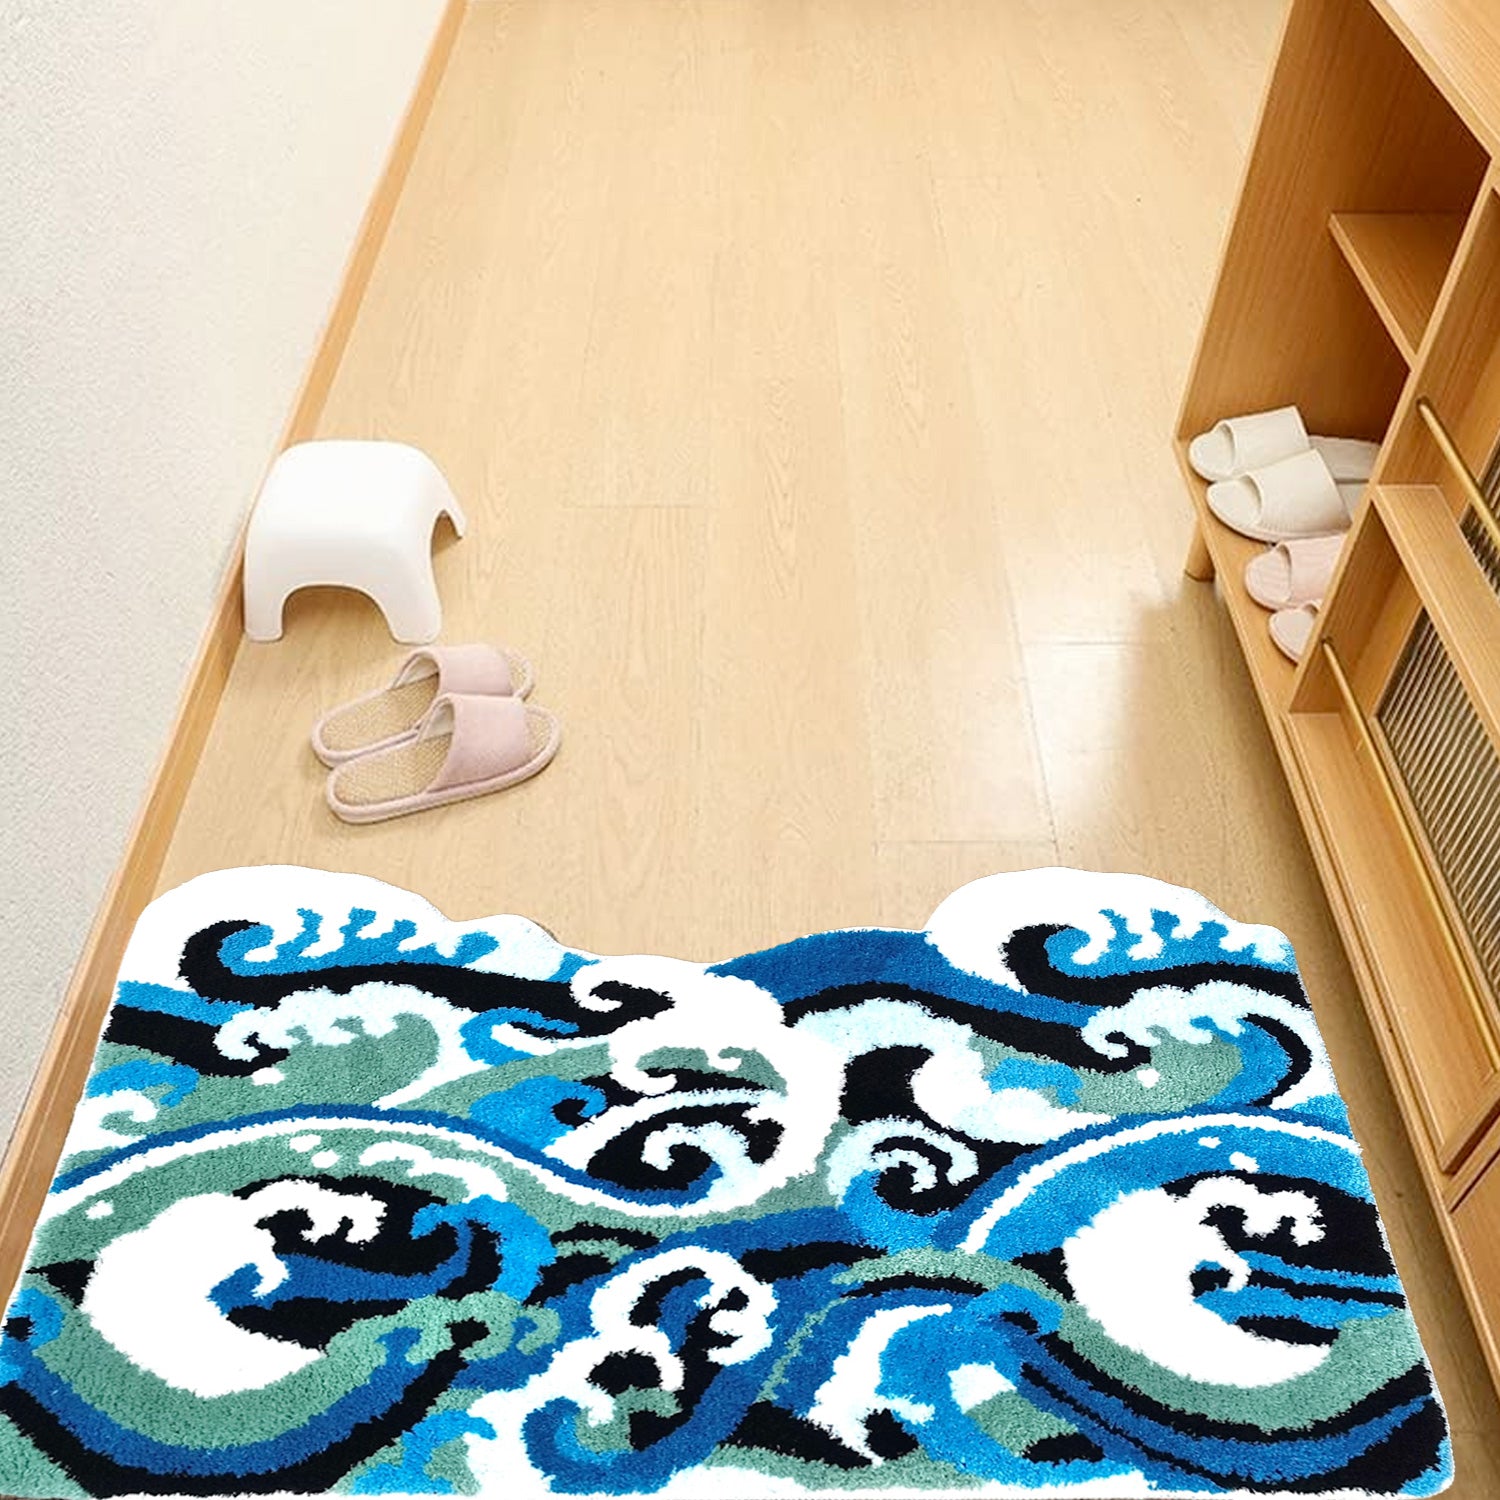 Feblilac Great Wave of Kanagawa Tufted Bath Mat